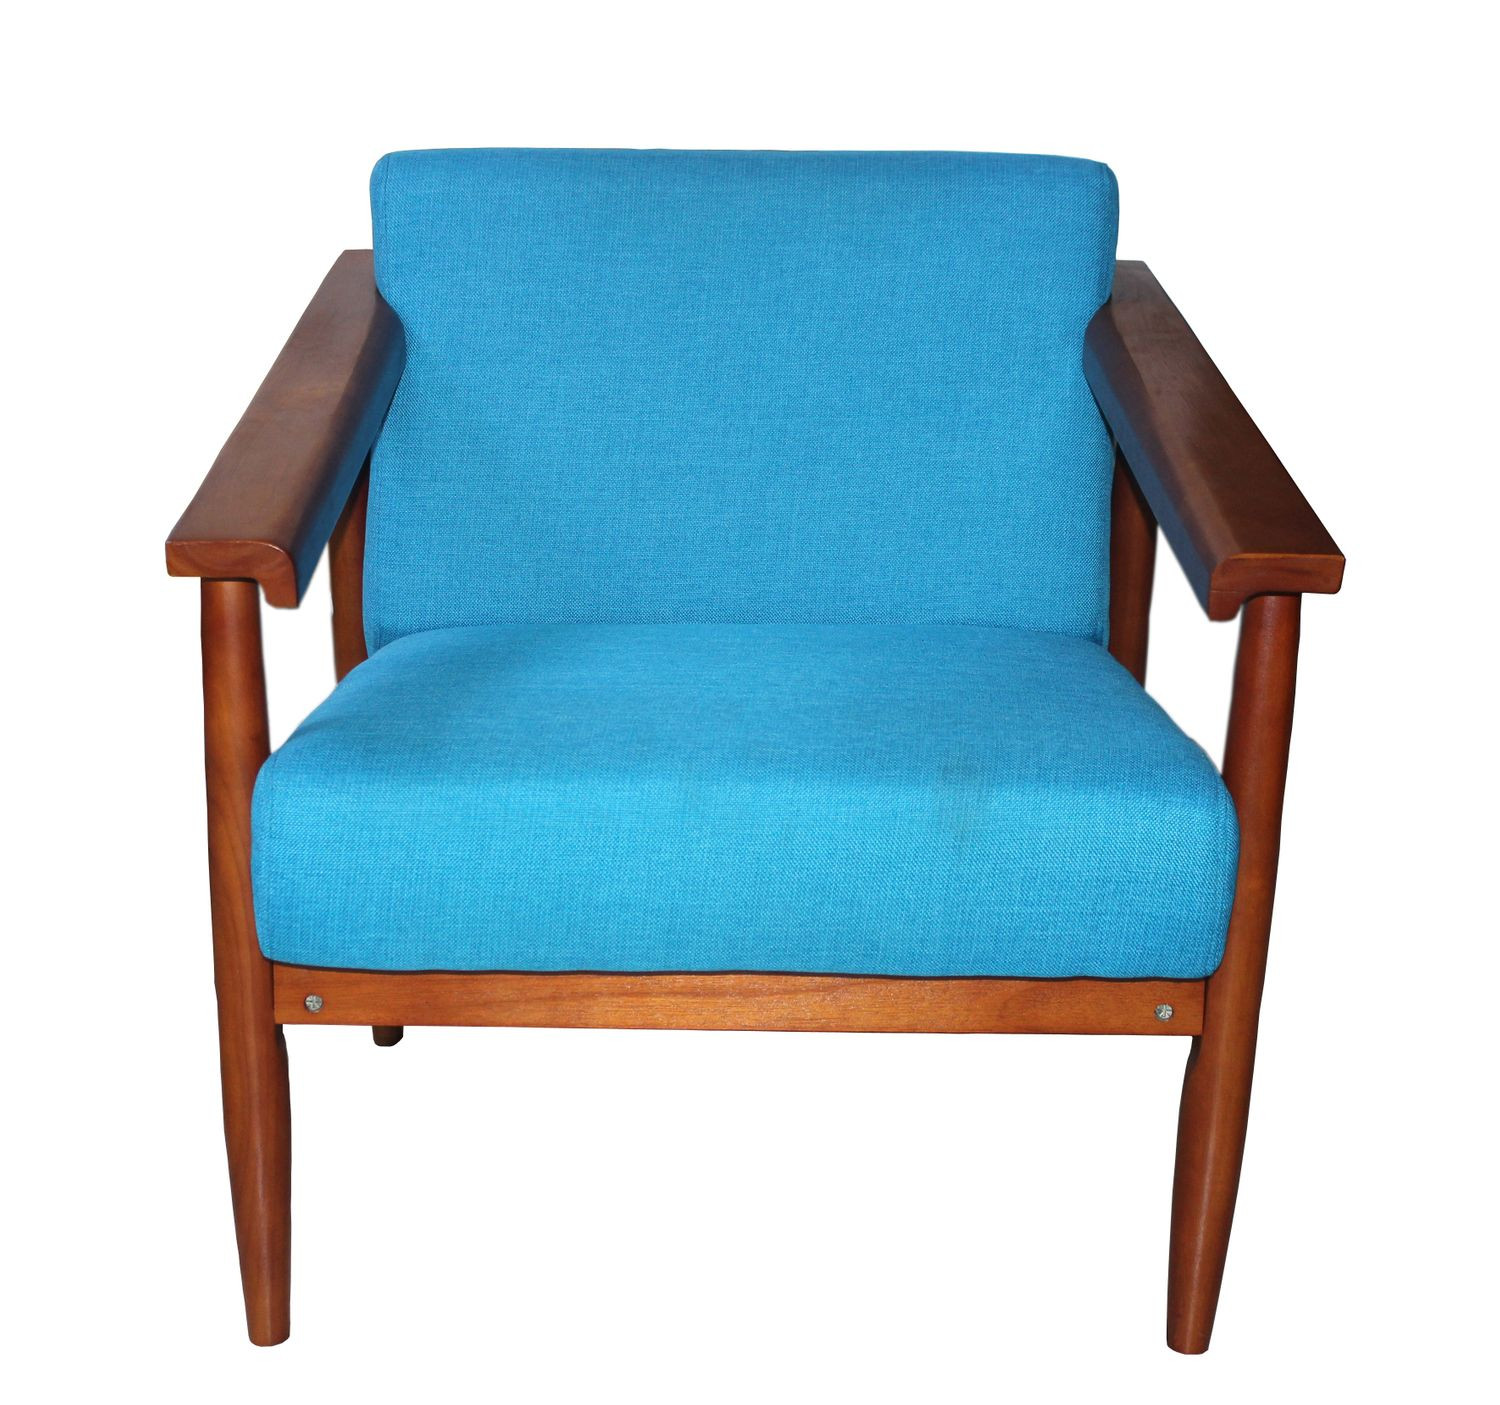 Sessel Blau
 Vintage Sessel blau